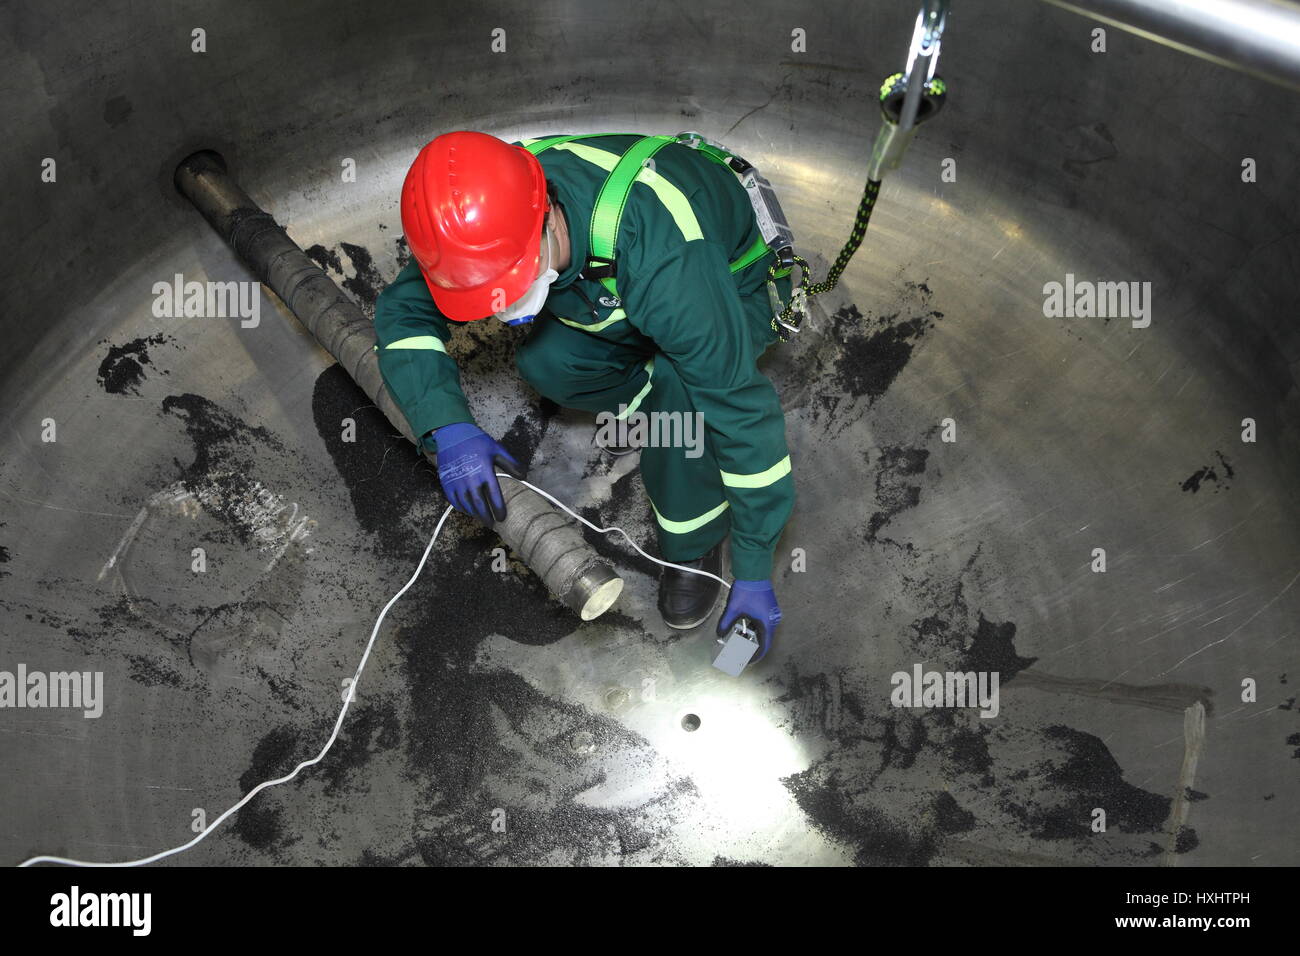 San Pietroburgo, Russia - Agosto 9, 2016: Interna caldaia industriale di ispezione, il lavoratore è all'interno della caldaia durante la sua riparazione. Foto Stock